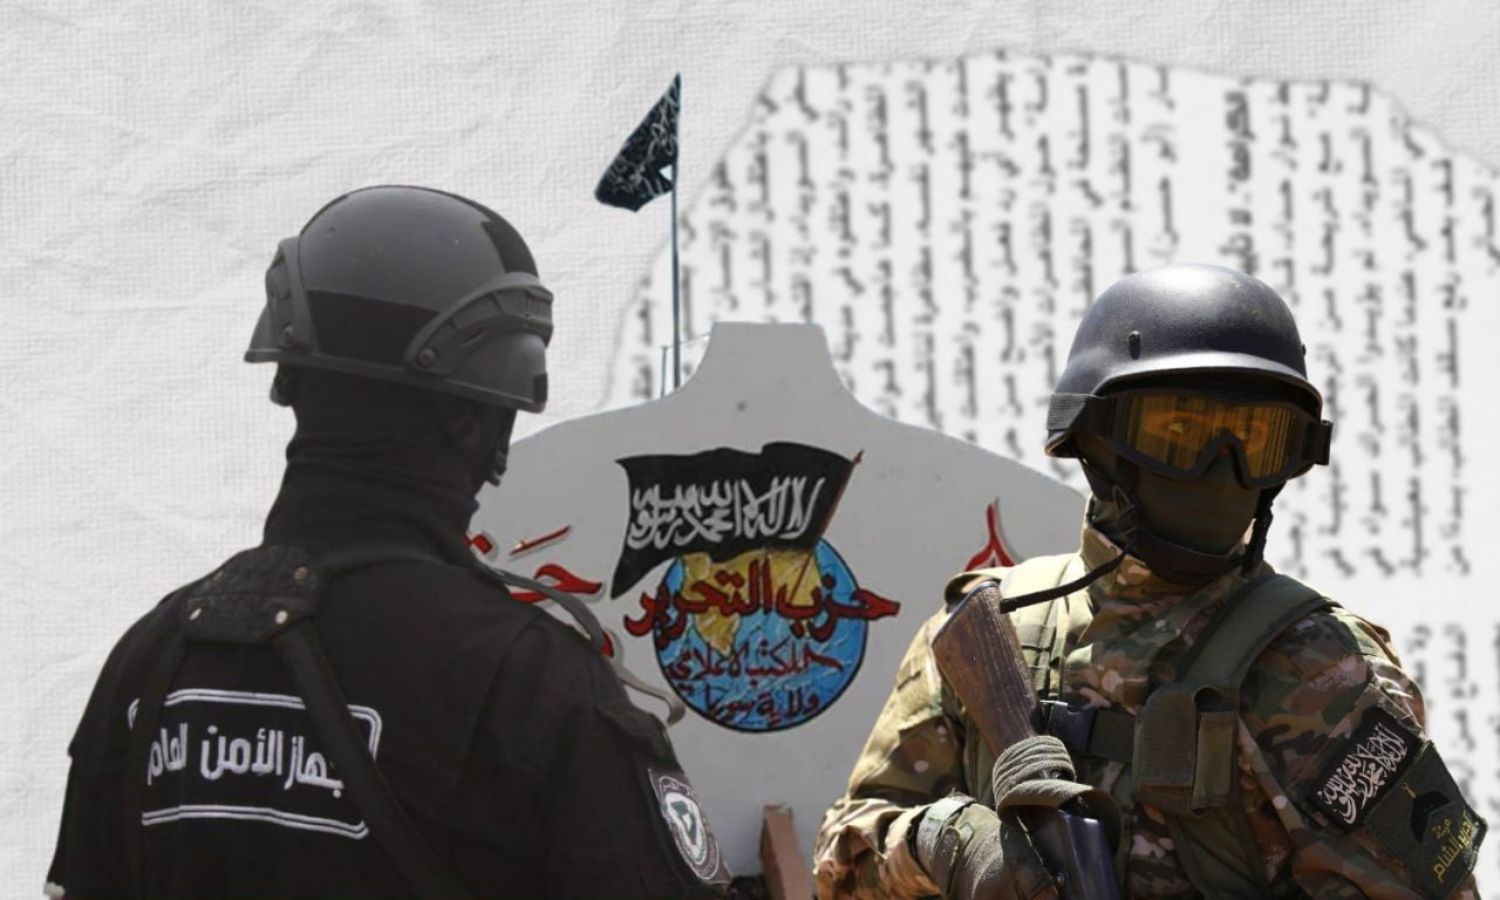 عنصر في "هيئة تحرير الشام" و"الأمن العام" وراية حزب "التحرير" (تعديل عنب بلدي)